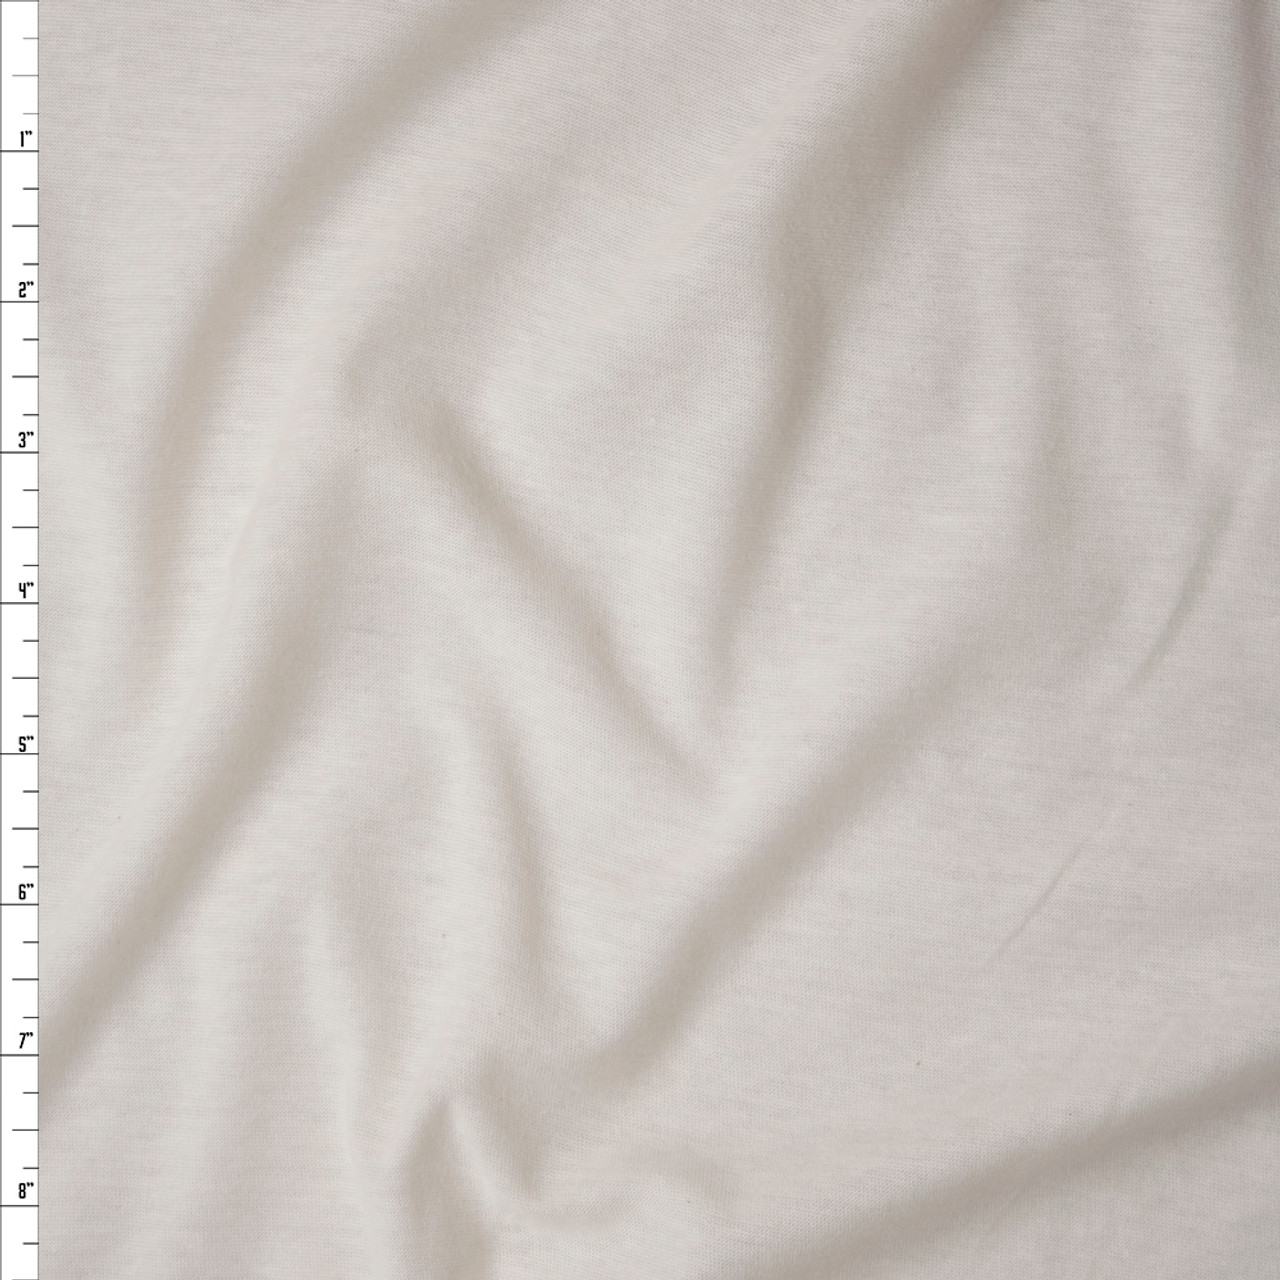 White Jersey Knit Fabric Clearance - SKU 0000 - 20 Yard Lot - Save $42 (40%)